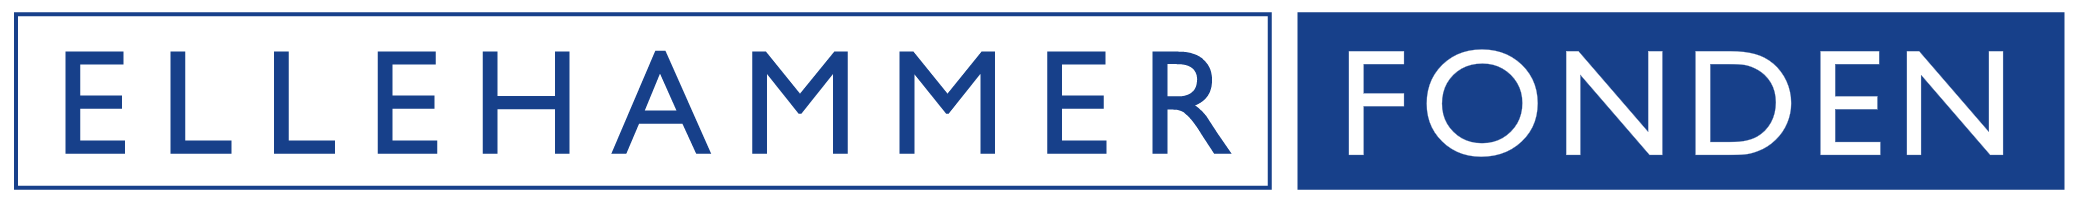 Ellehammer logo